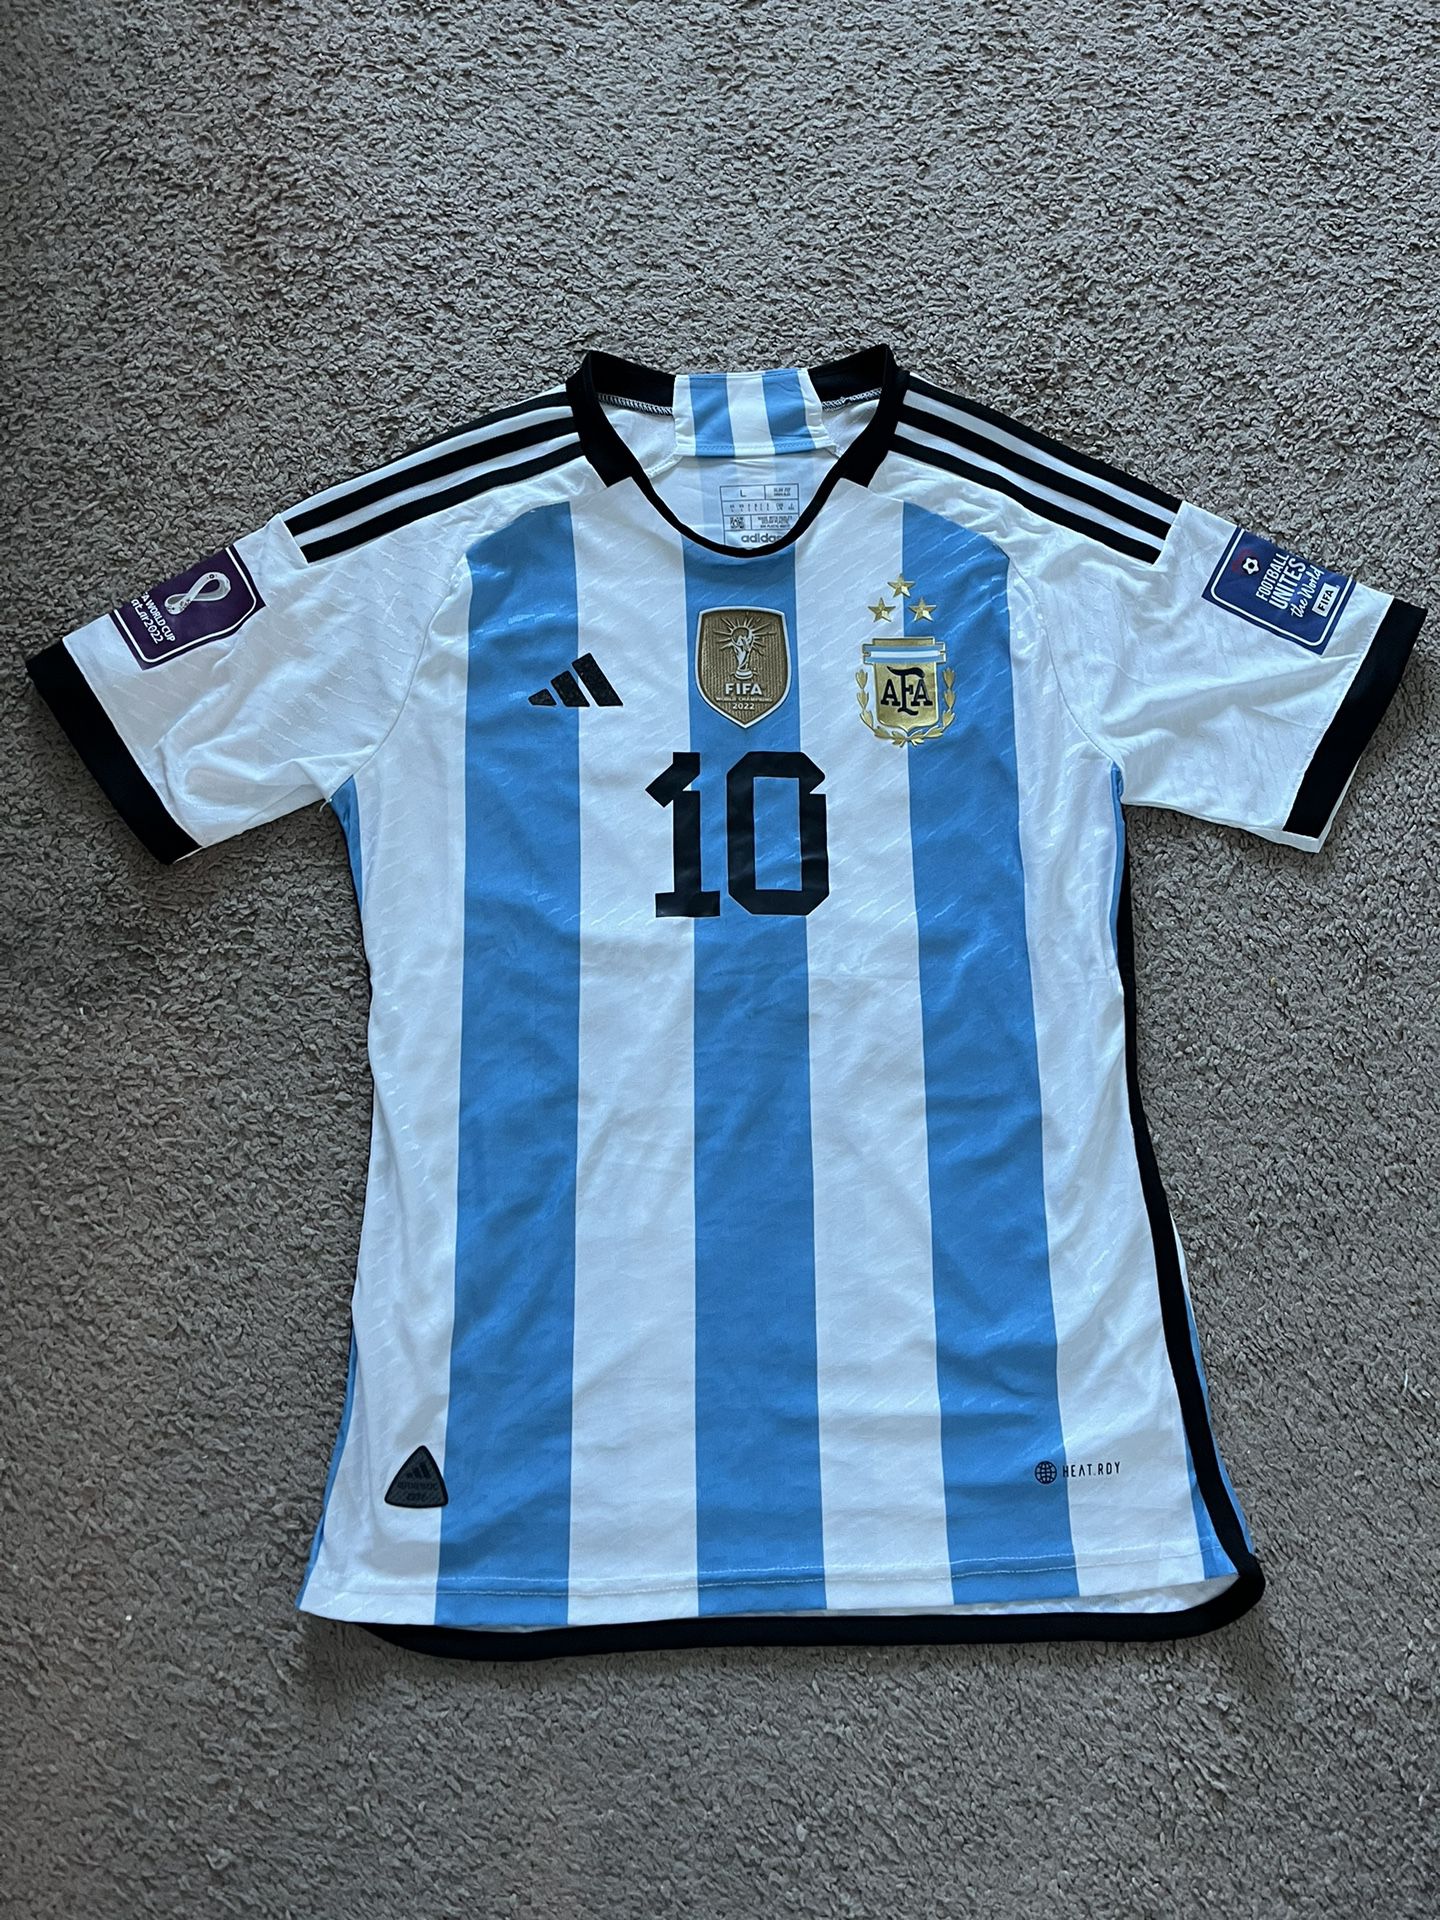 Argentina Jersey Lionel Messi 3 Stars / Camiseta Lionel Messi 3 Estrellas